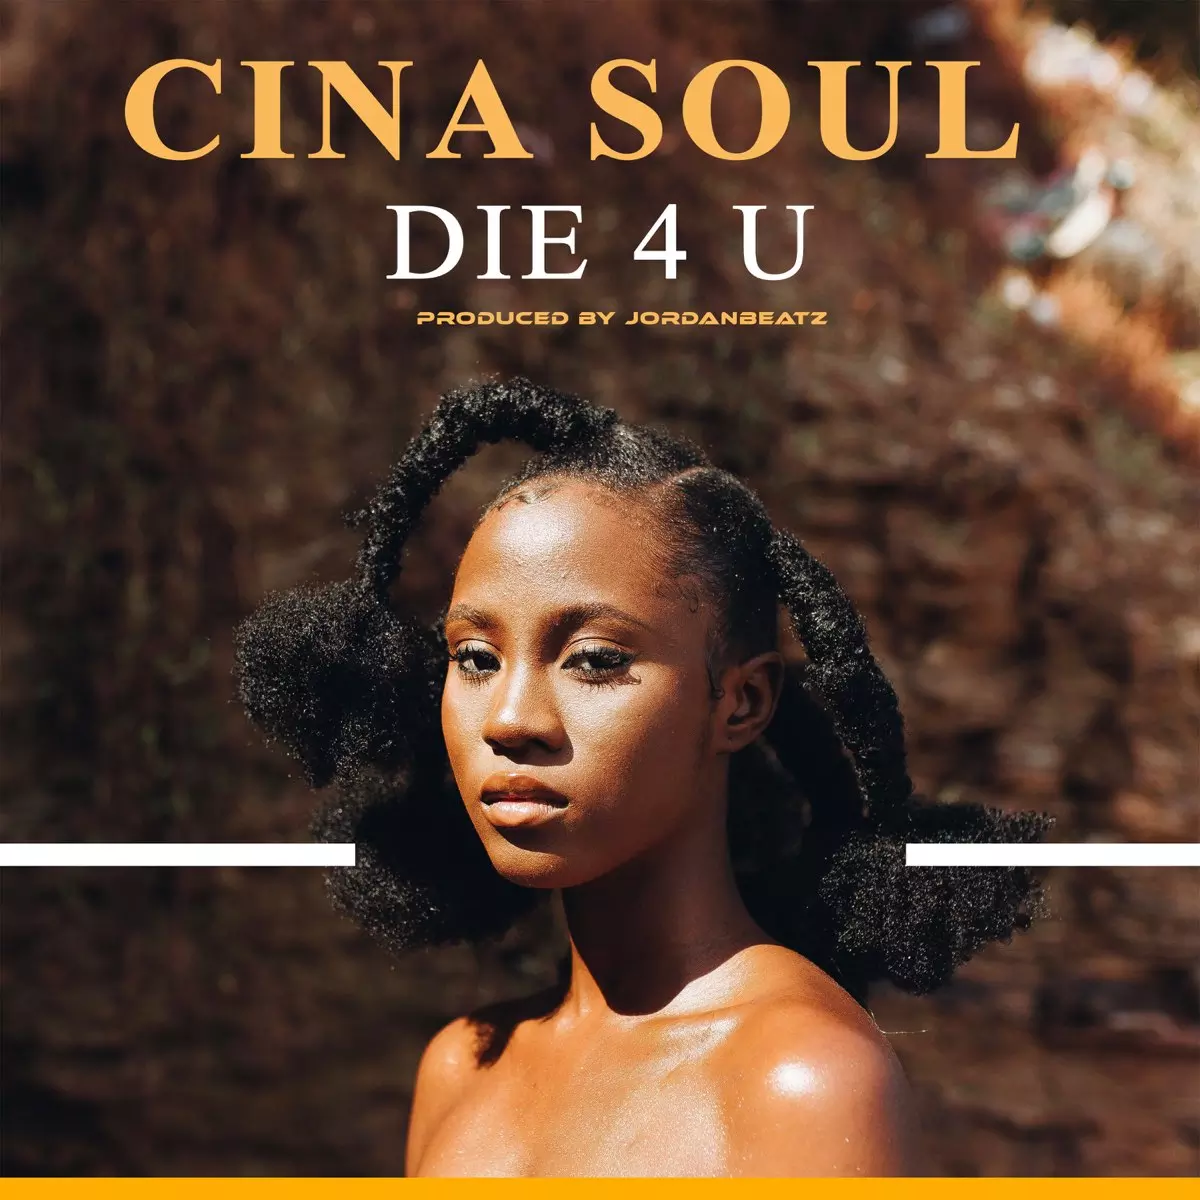 Die 4 U - Single by Cina Soul on Apple Music